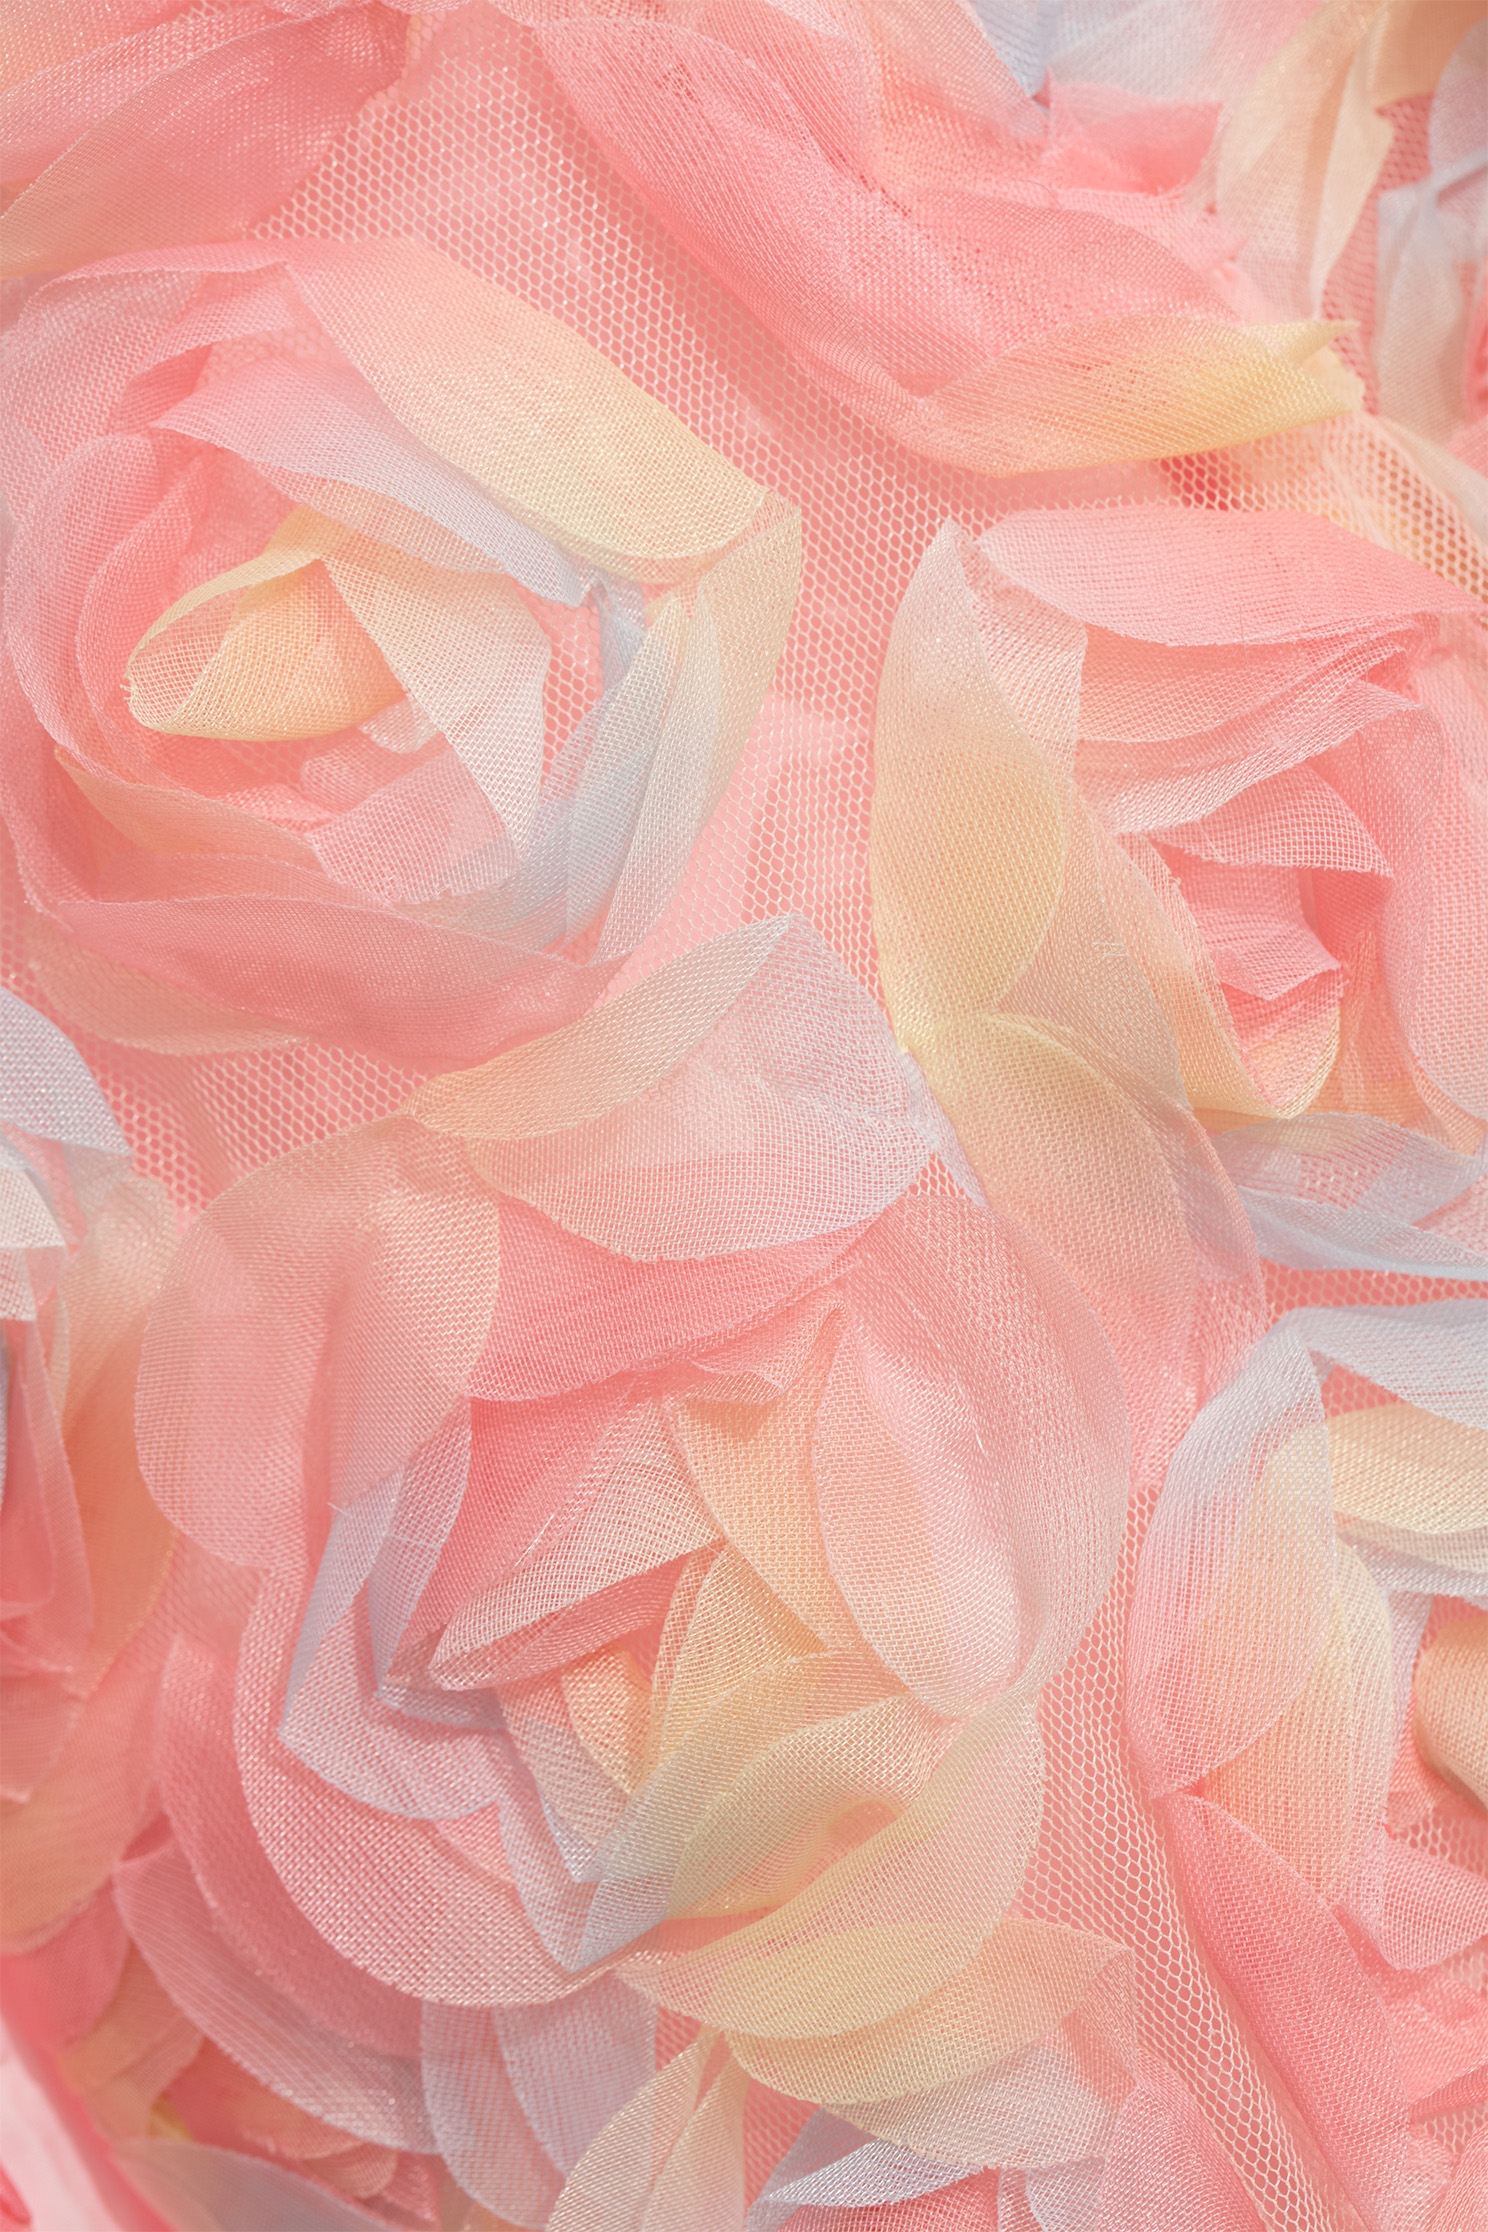 粉彩立體玫瑰花外套粉彩立體玫瑰花外套,一般外套,外套,春夏穿搭,珍珠,約會特輯